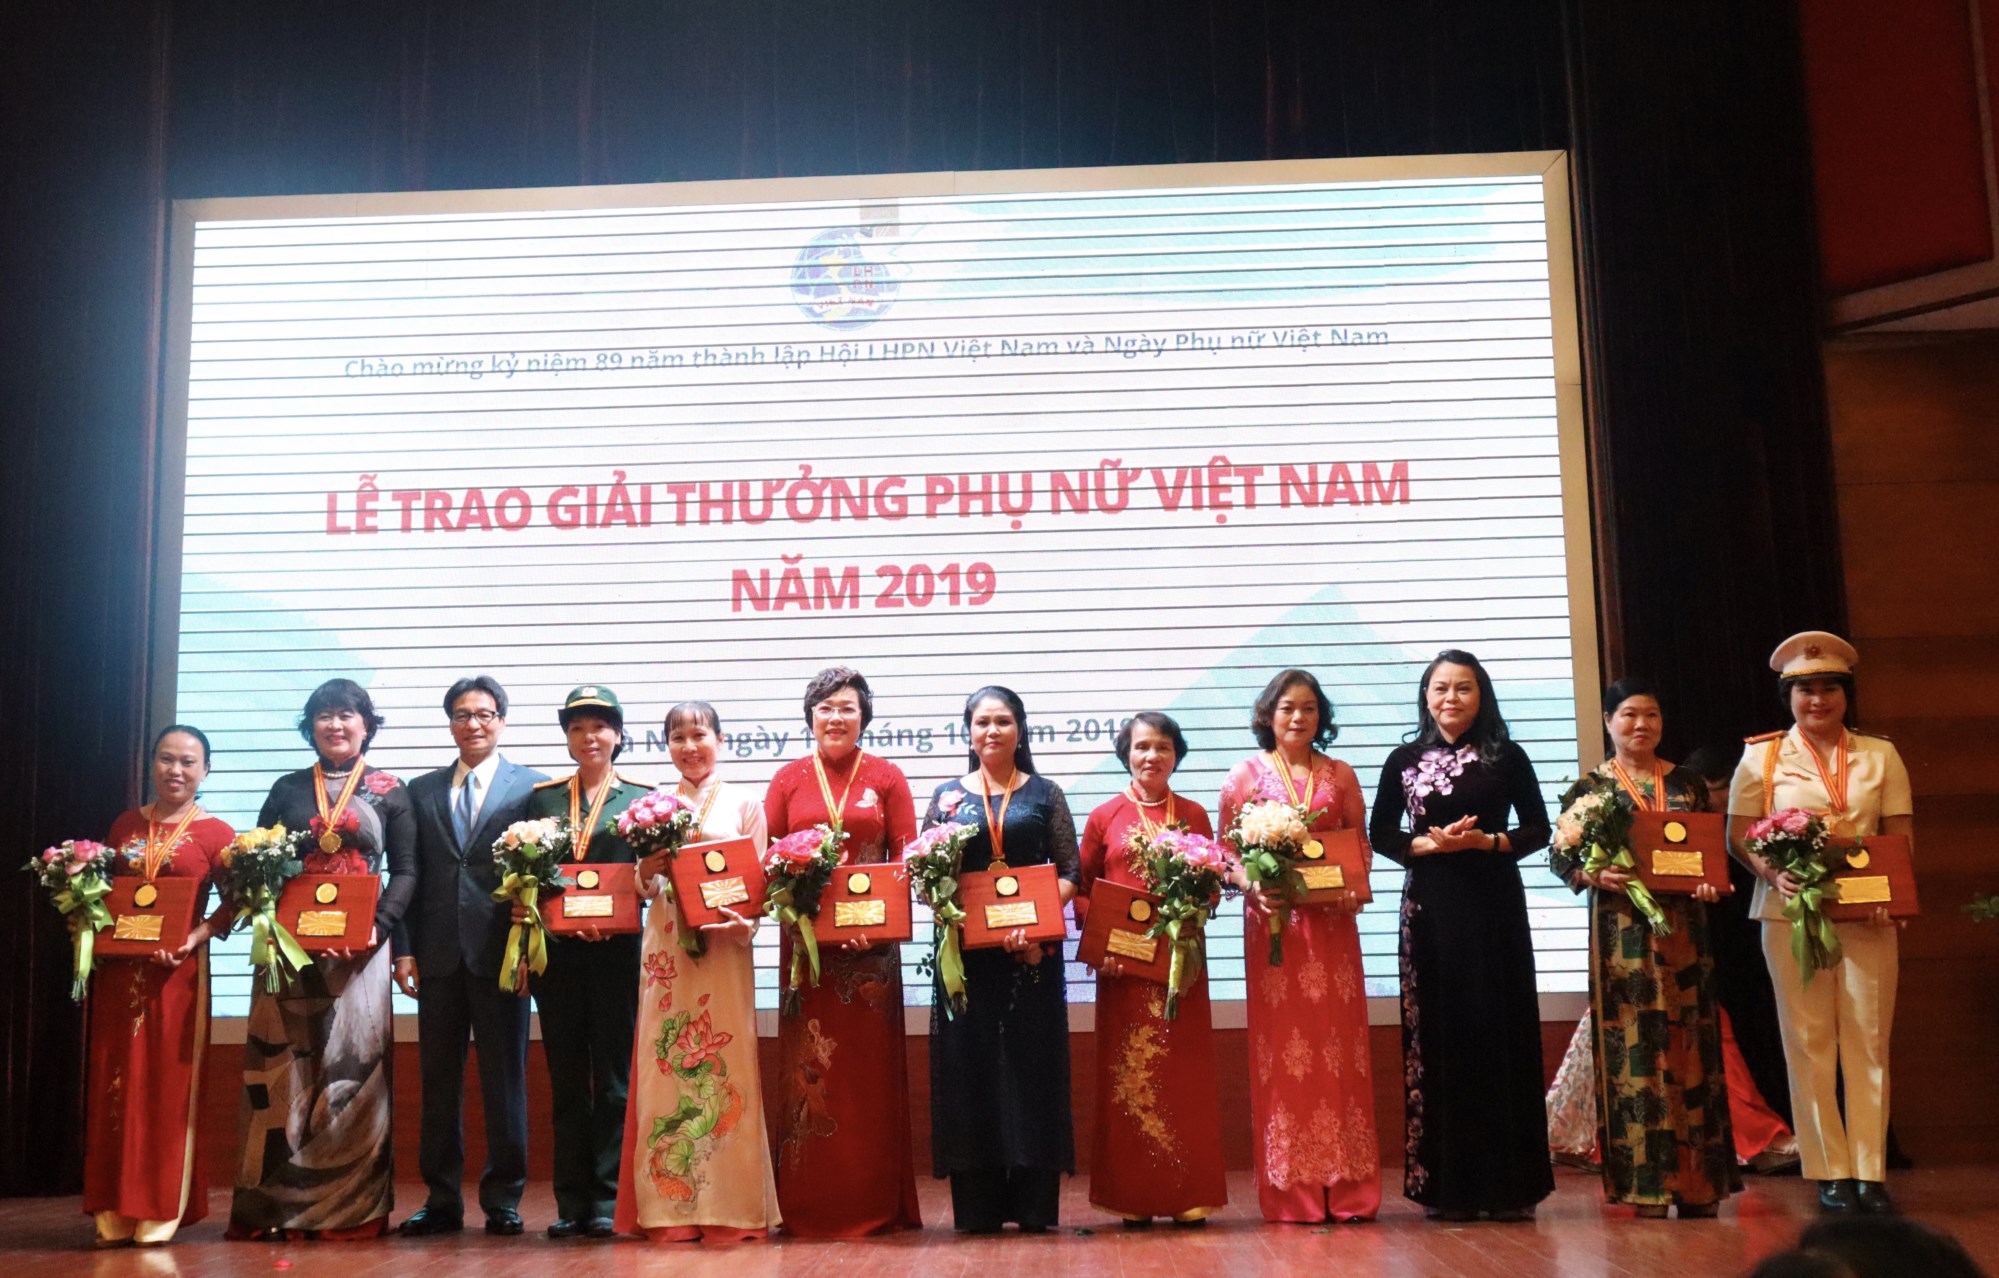 Phó Thủ tướng Vũ Đức Đam và Chủ tịch Hội LHPN Việt Nam Nguyễn Thị Thu Hà trao Giải thưởng Phụ nữ Việt Nam 2019 cho các cá nhân